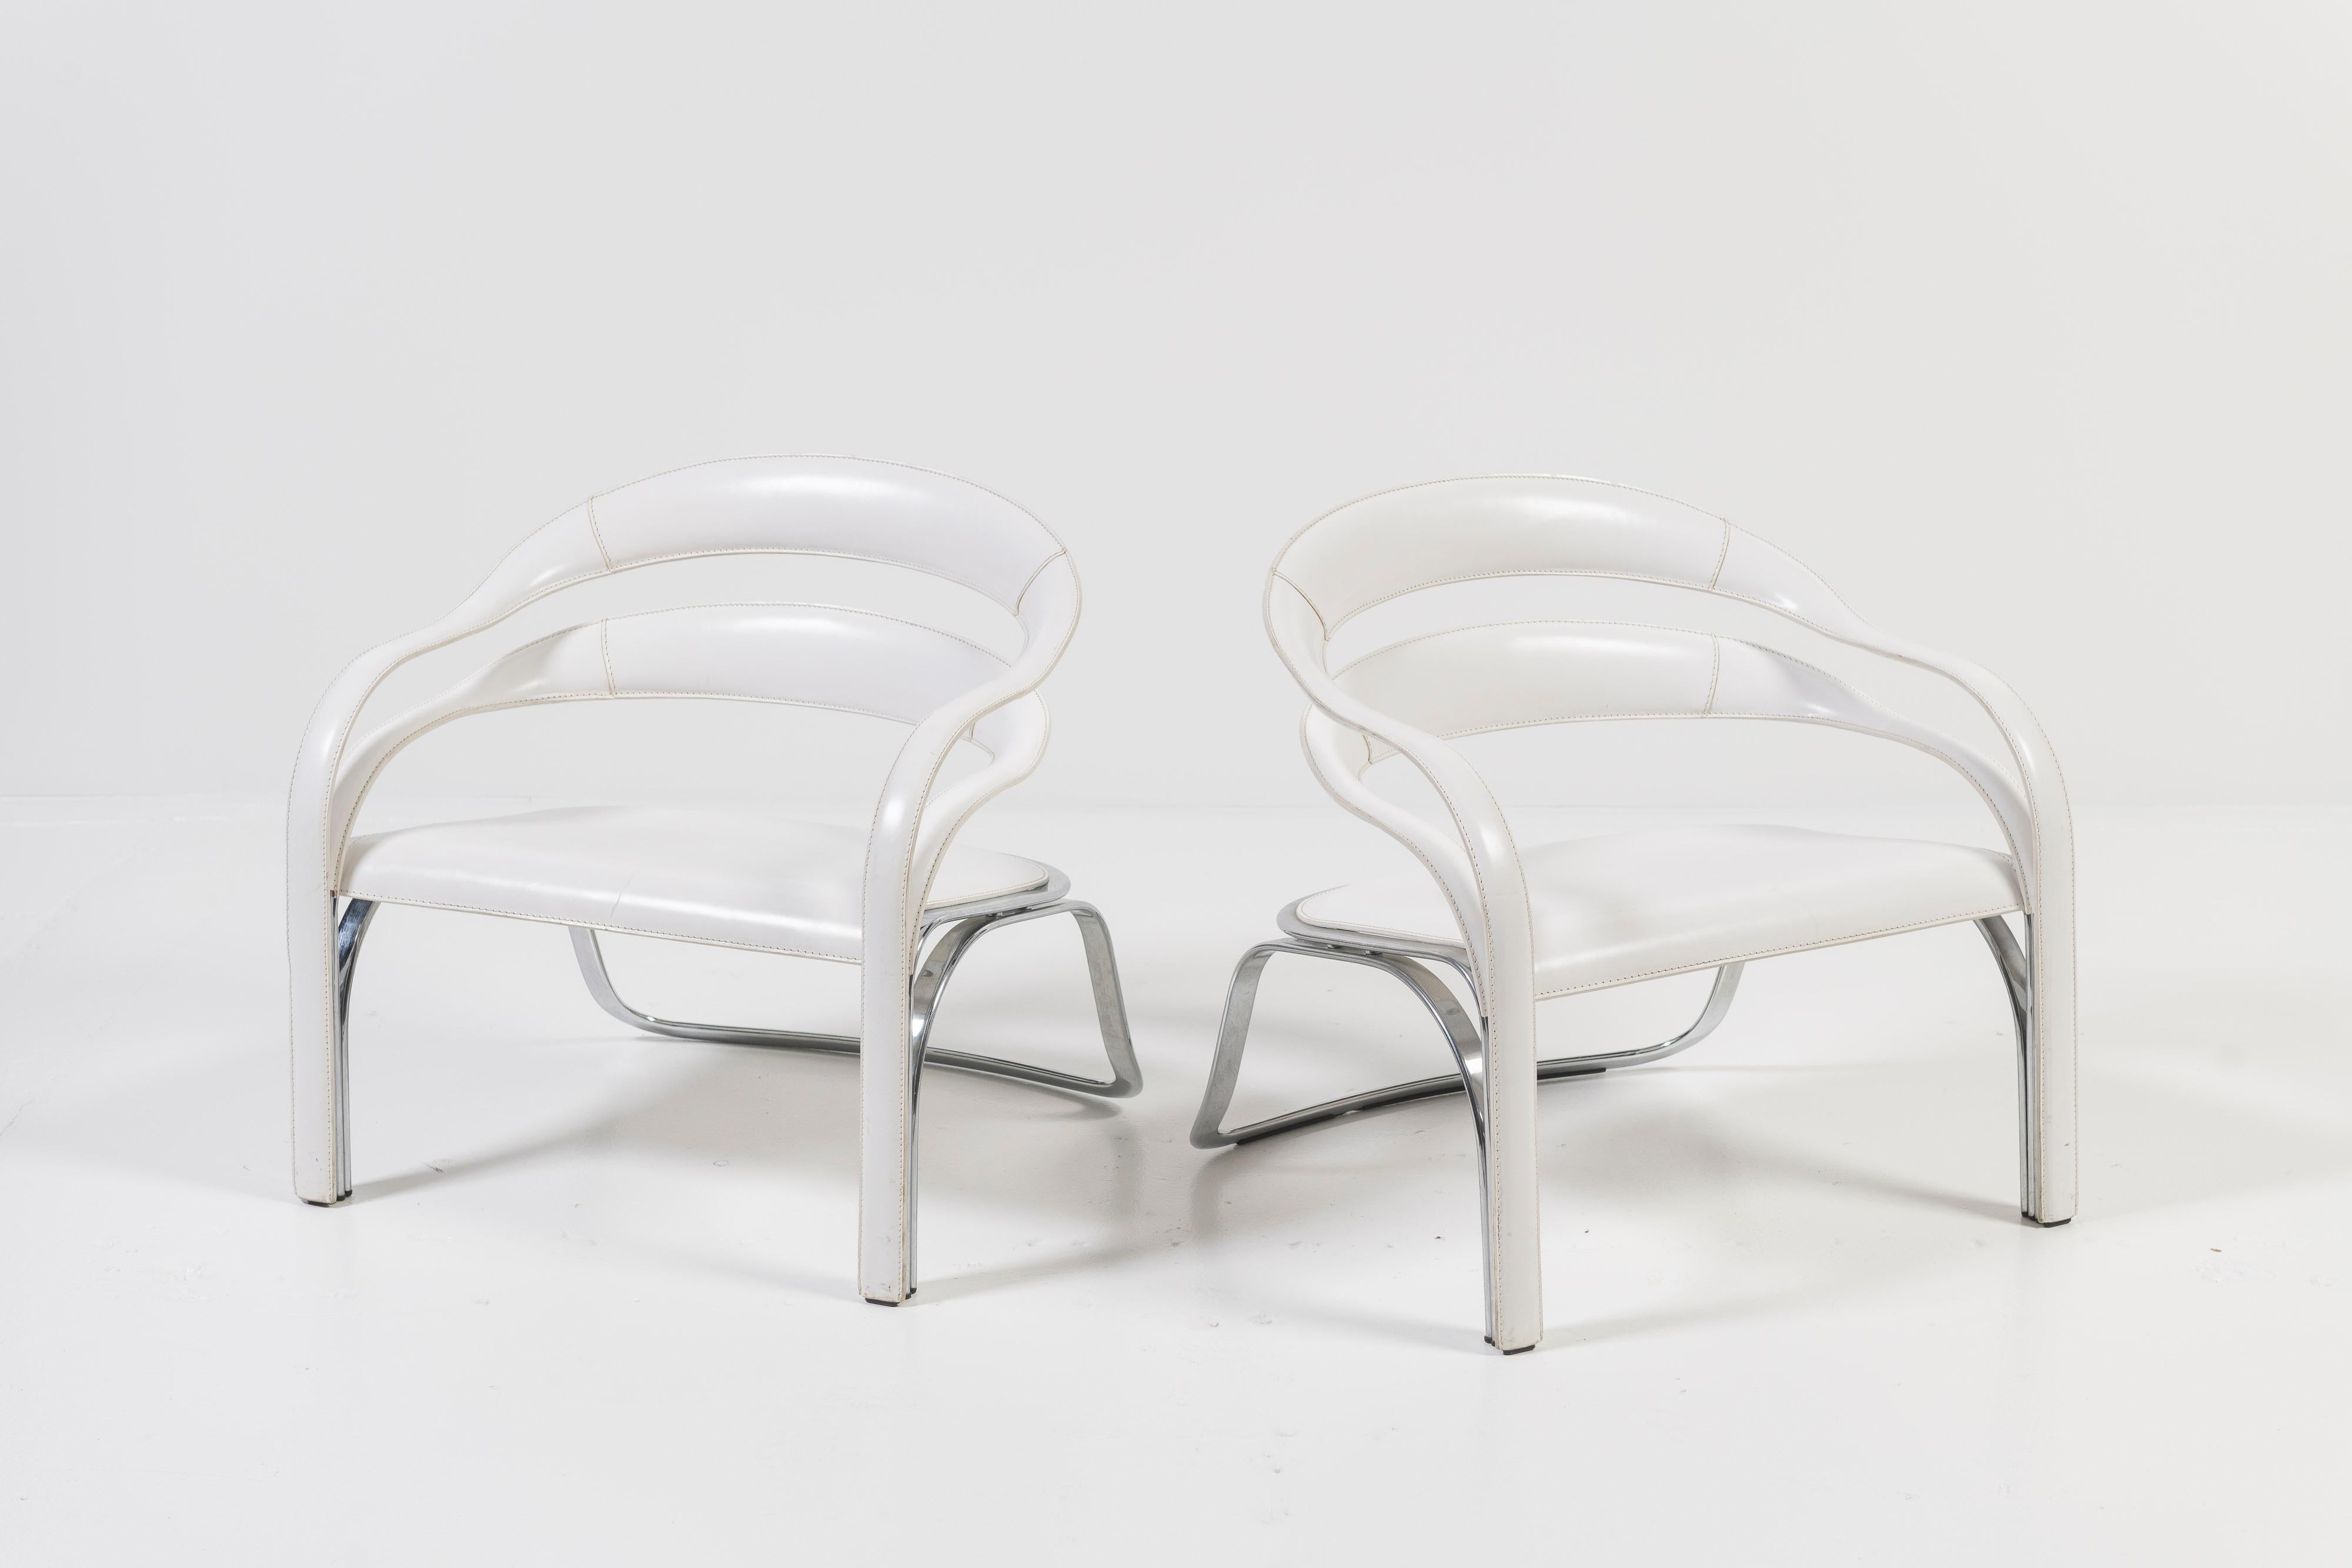 Der Fettuccini W Lounge Chair von Fasem ist ein sexy, komfortabler Loungesessel mit einem flexiblen Stahlgestell. Der weltbekannte Vladimir Kagan schuf charakteristische Designs mit elegant geschwungenen Rahmen und dramatischen Silhouetten. Die